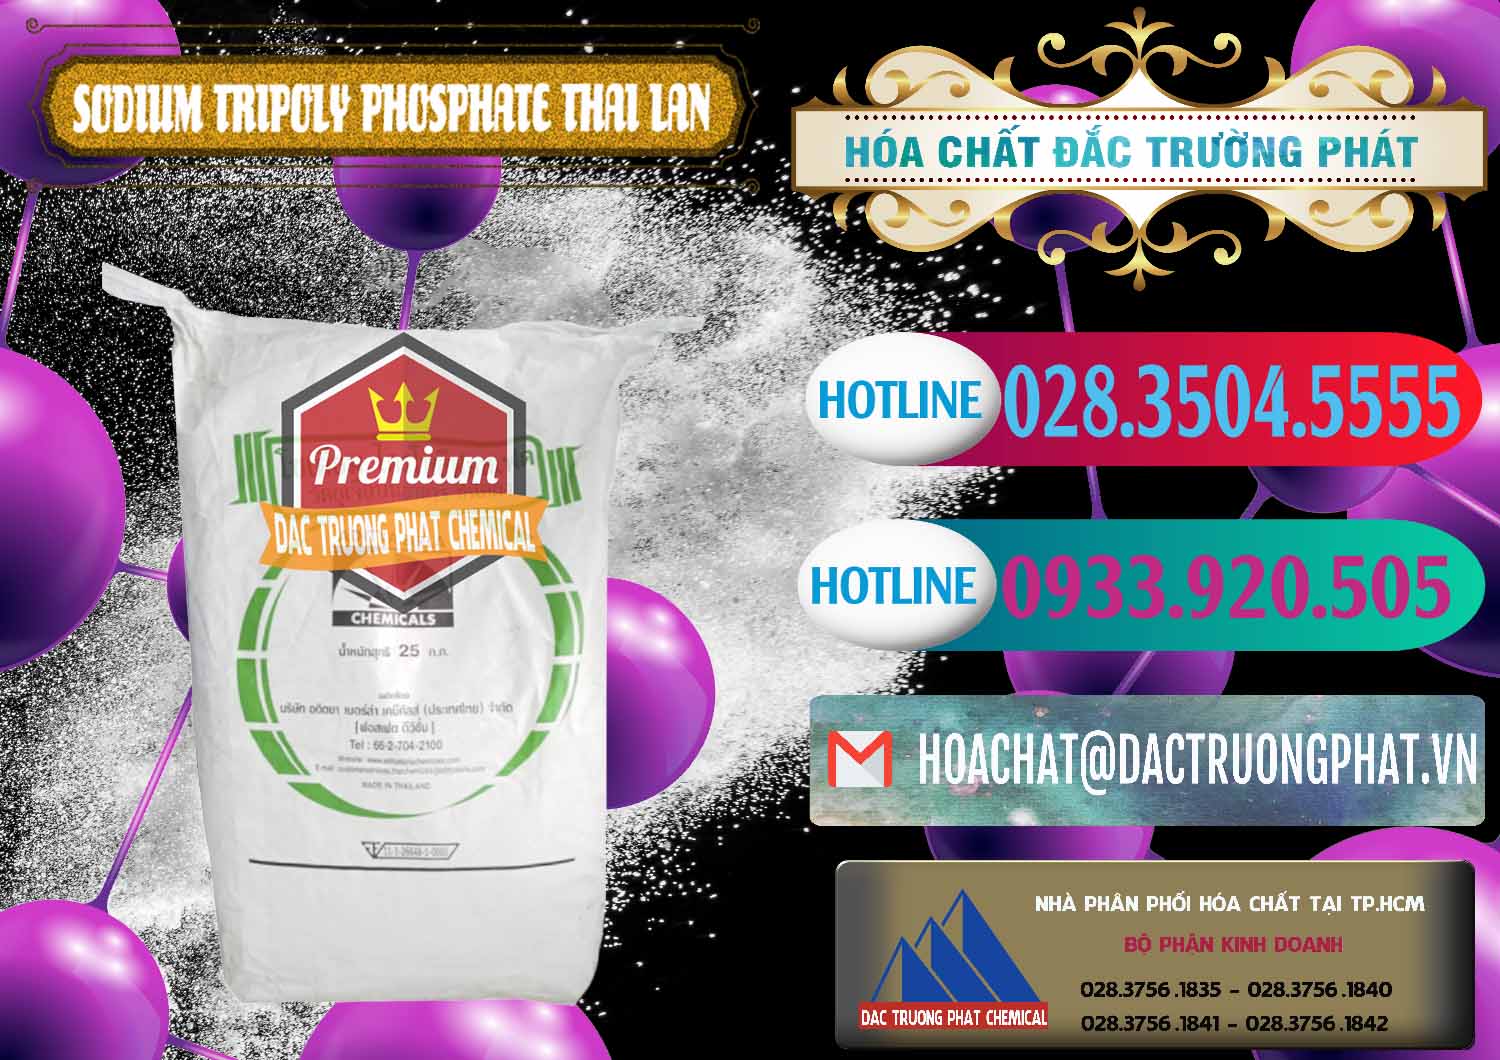 Công ty chuyên bán - phân phối Sodium Tripoly Phosphate - STPP Aditya Birla Grasim Thái Lan Thailand - 0421 - Nhà phân phối & nhập khẩu hóa chất tại TP.HCM - truongphat.vn